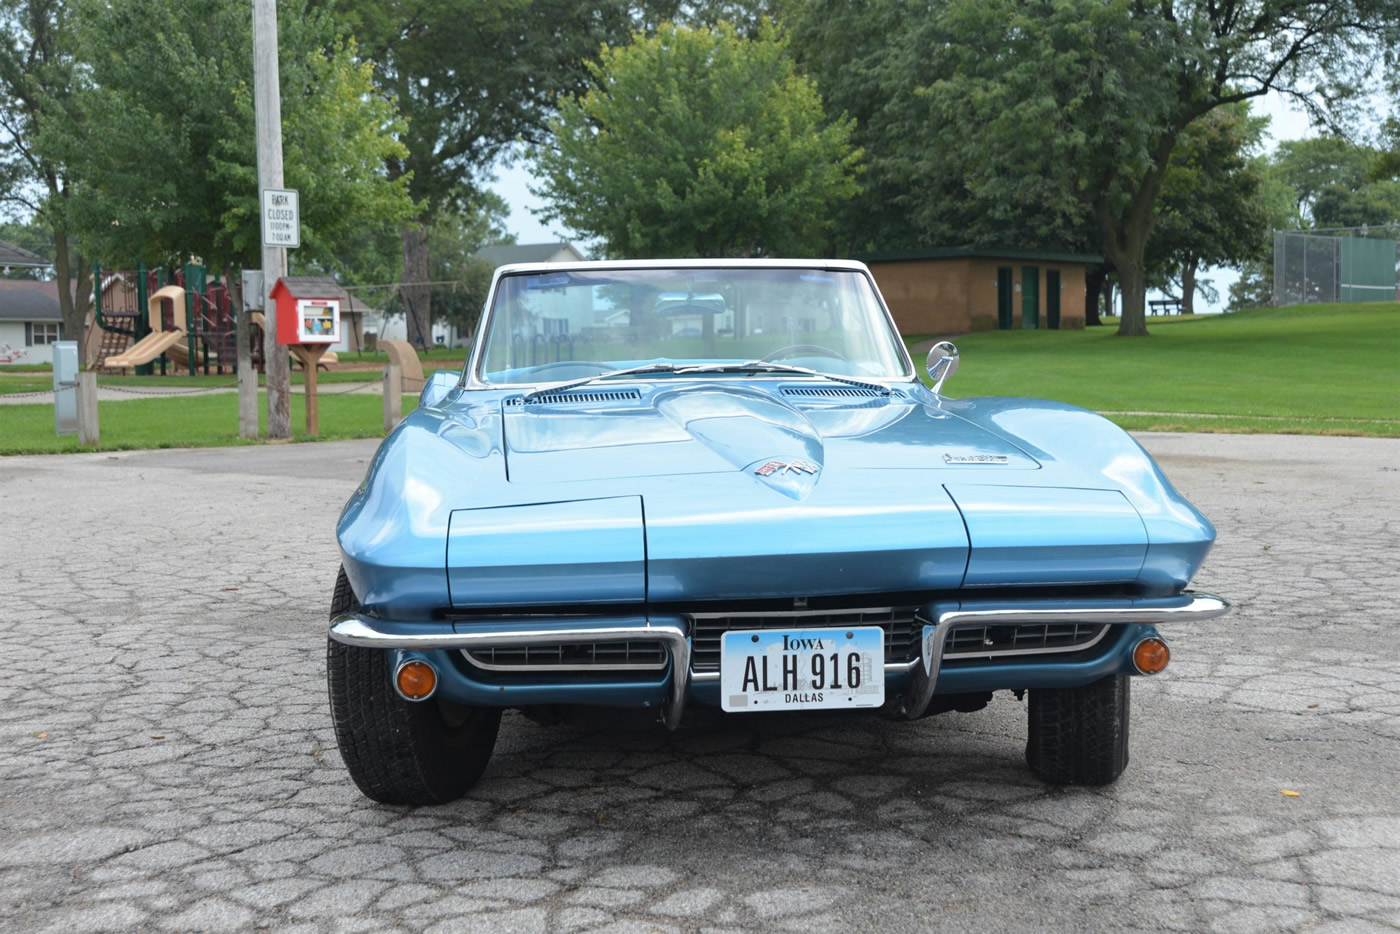 1966 Corvette Convertible - 327ci 300 hp in Nassau Blue